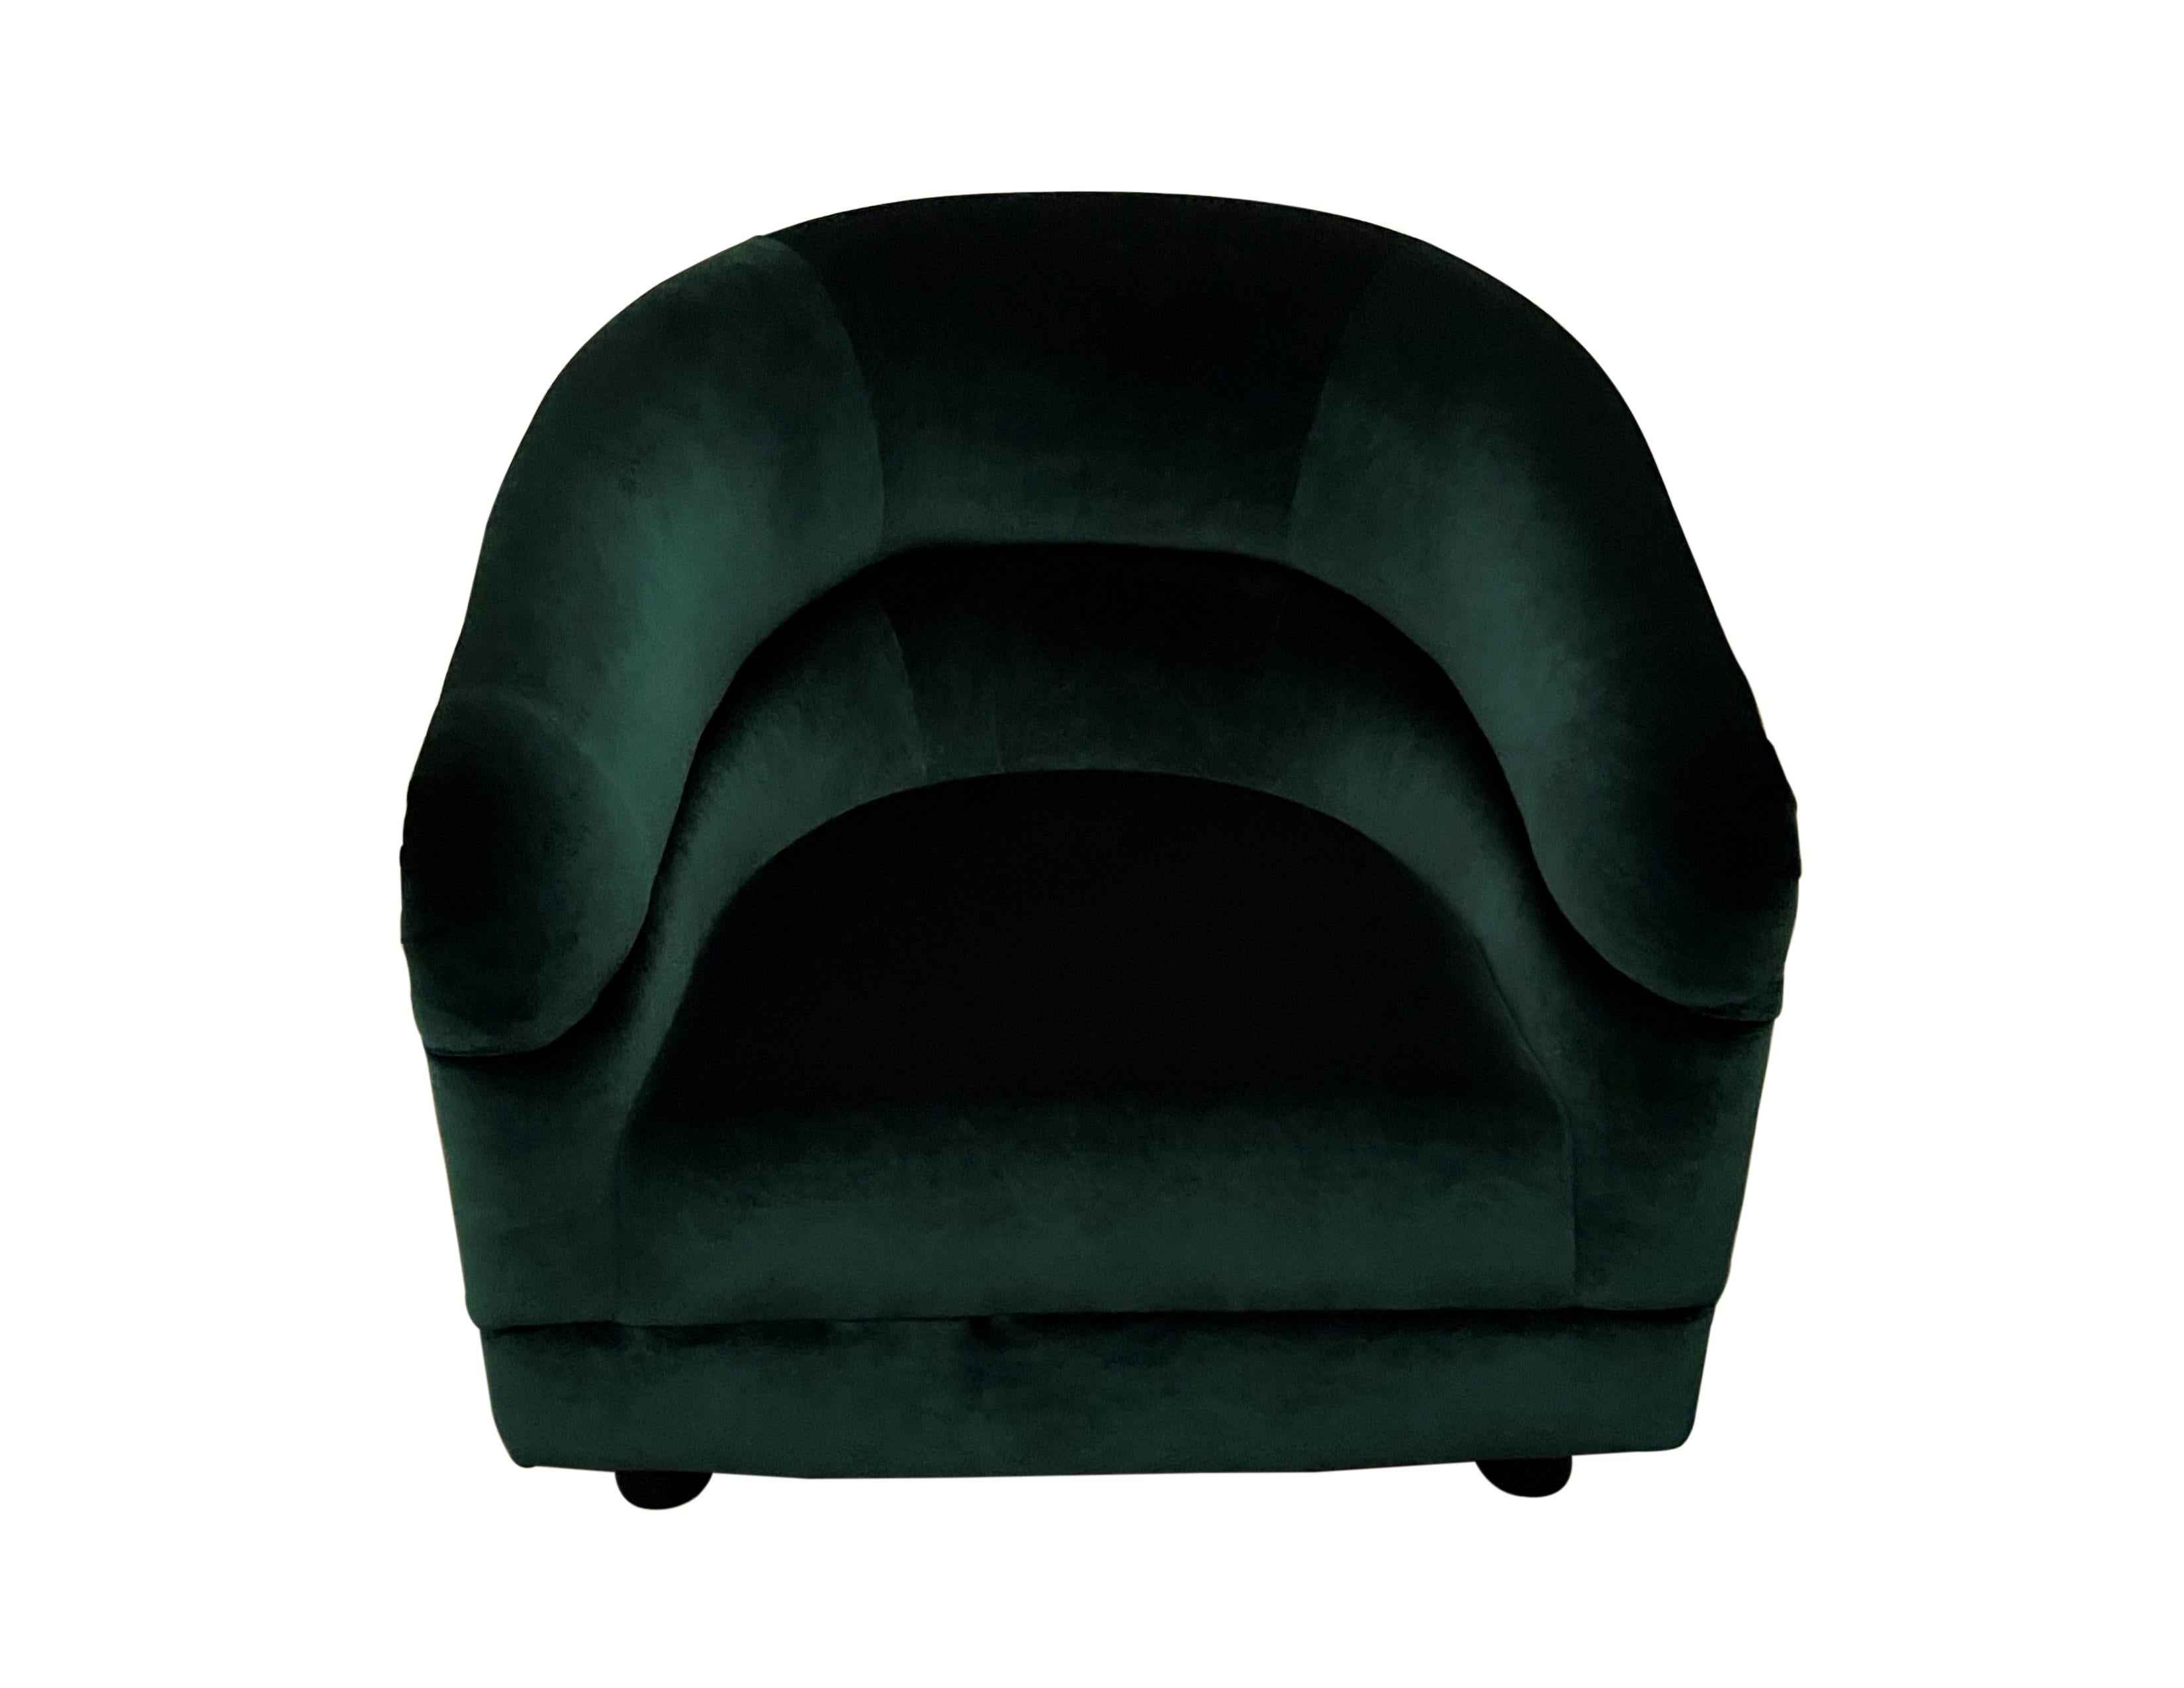 Ein fabelhaftes Paar von Mid-Century Modern Barrel zurück Club / Lounge Stühle, aus den 1970er Jahren. Neu gepolstert mit luxuriösem und reichhaltigem smaragdgrünem Juwelensamt. Sehr bequeme, stilvolle und elegante Vintage-Stühle aus der Mitte des